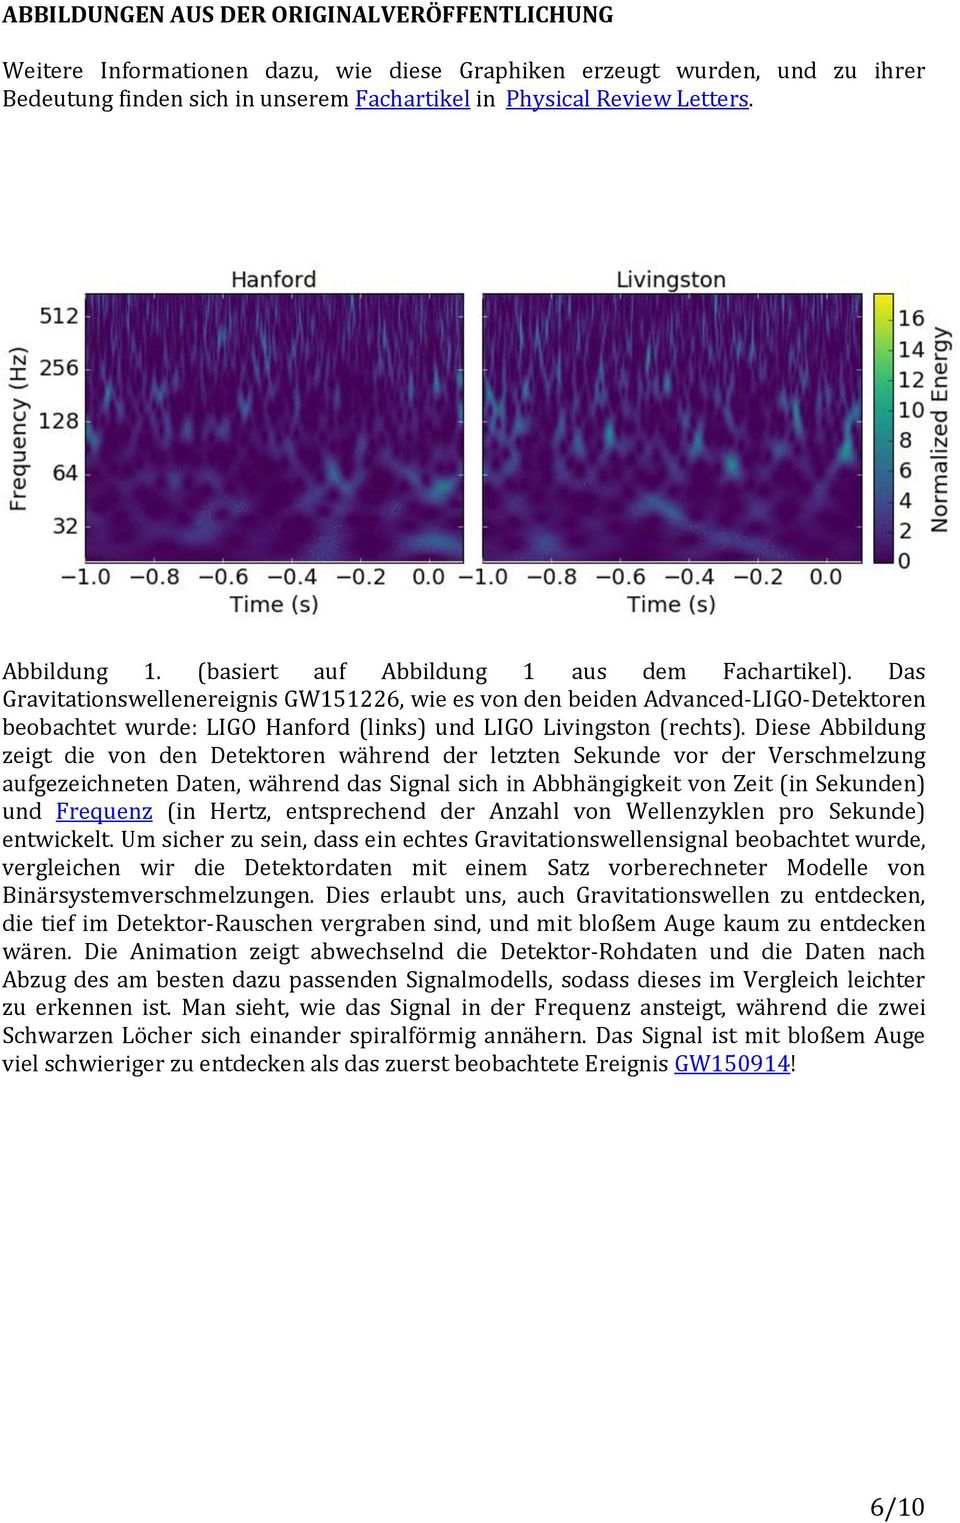 Das Gravitationswellenereignis GW151226, wie es von den beiden Advanced-LIGO-Detektoren beobachtet wurde: LIGO Hanford (links) und LIGO Livingston (rechts).